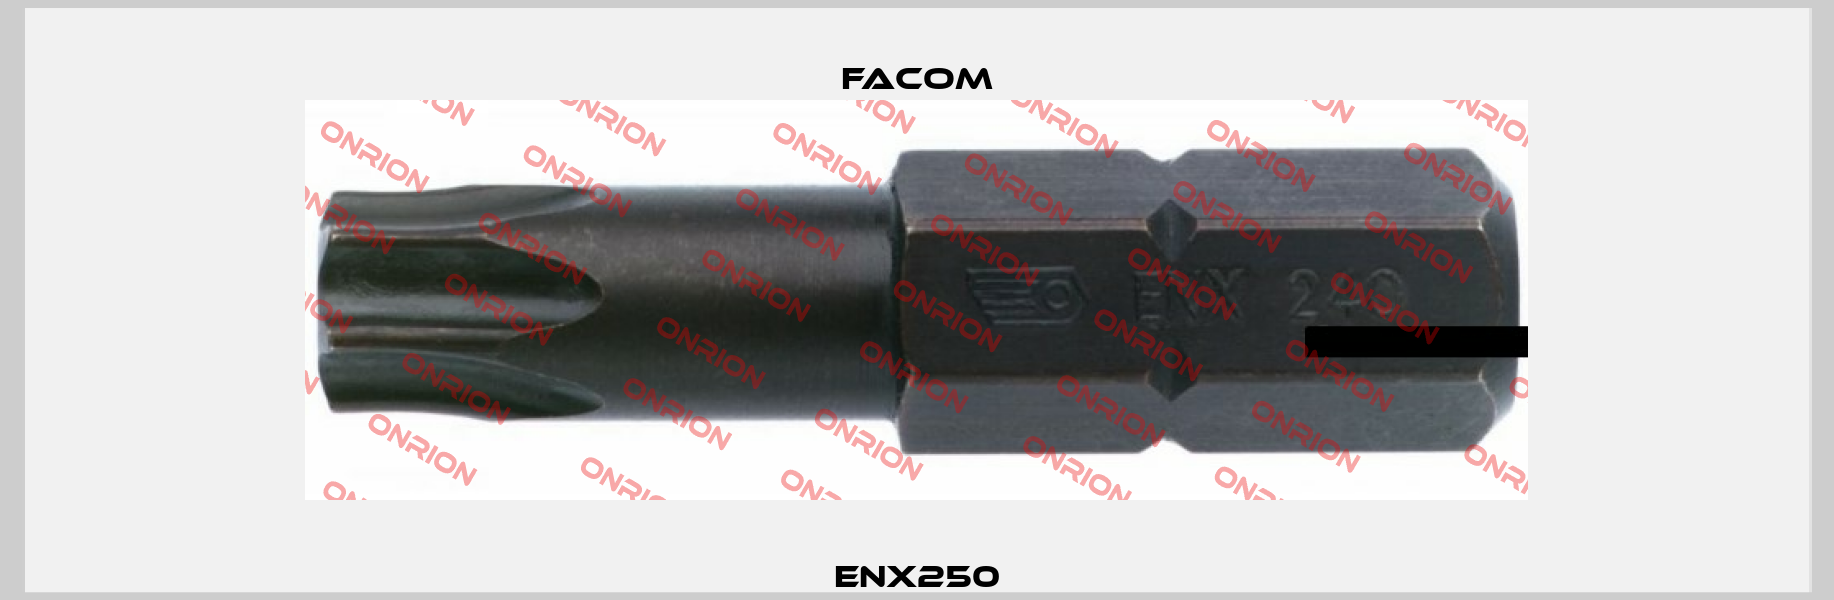 ENX250 Facom